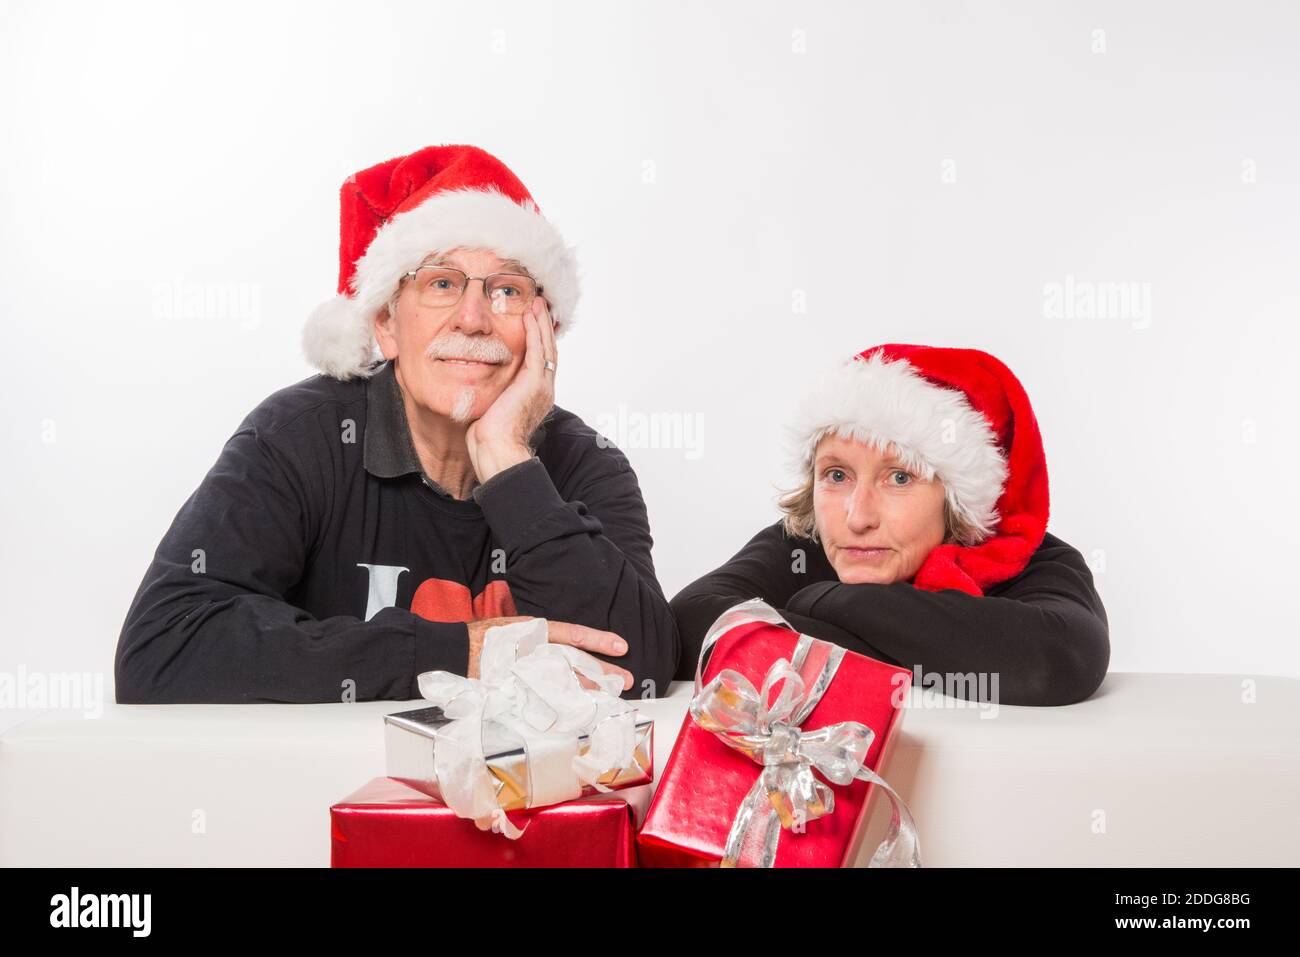 Wird mit Weihnachten? Eltern und Großelltern sind traurig und befürchten wegen der Kontaktsperren ein einsames Weichnachten ohne Familie Foto Stock